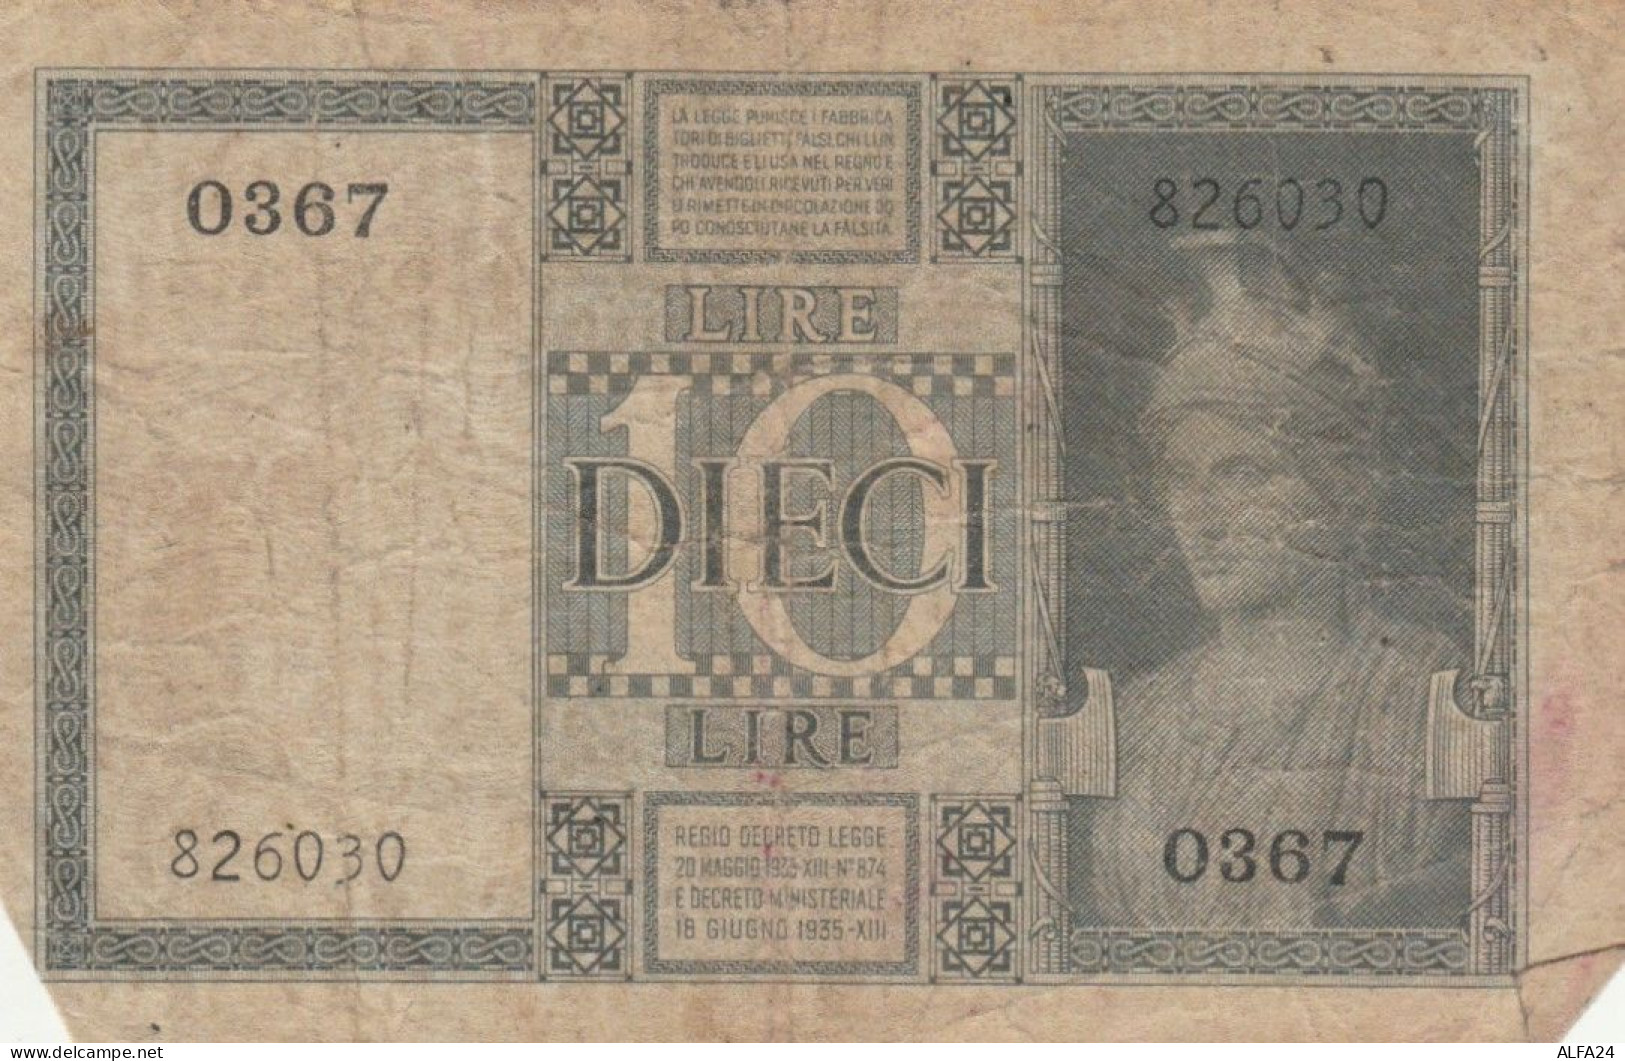 BANCONOTA ITALIA LIRE 10 1939 BIGLIETTO DI STATO VF (VS527 - Regno D'Italia – 10 Lire